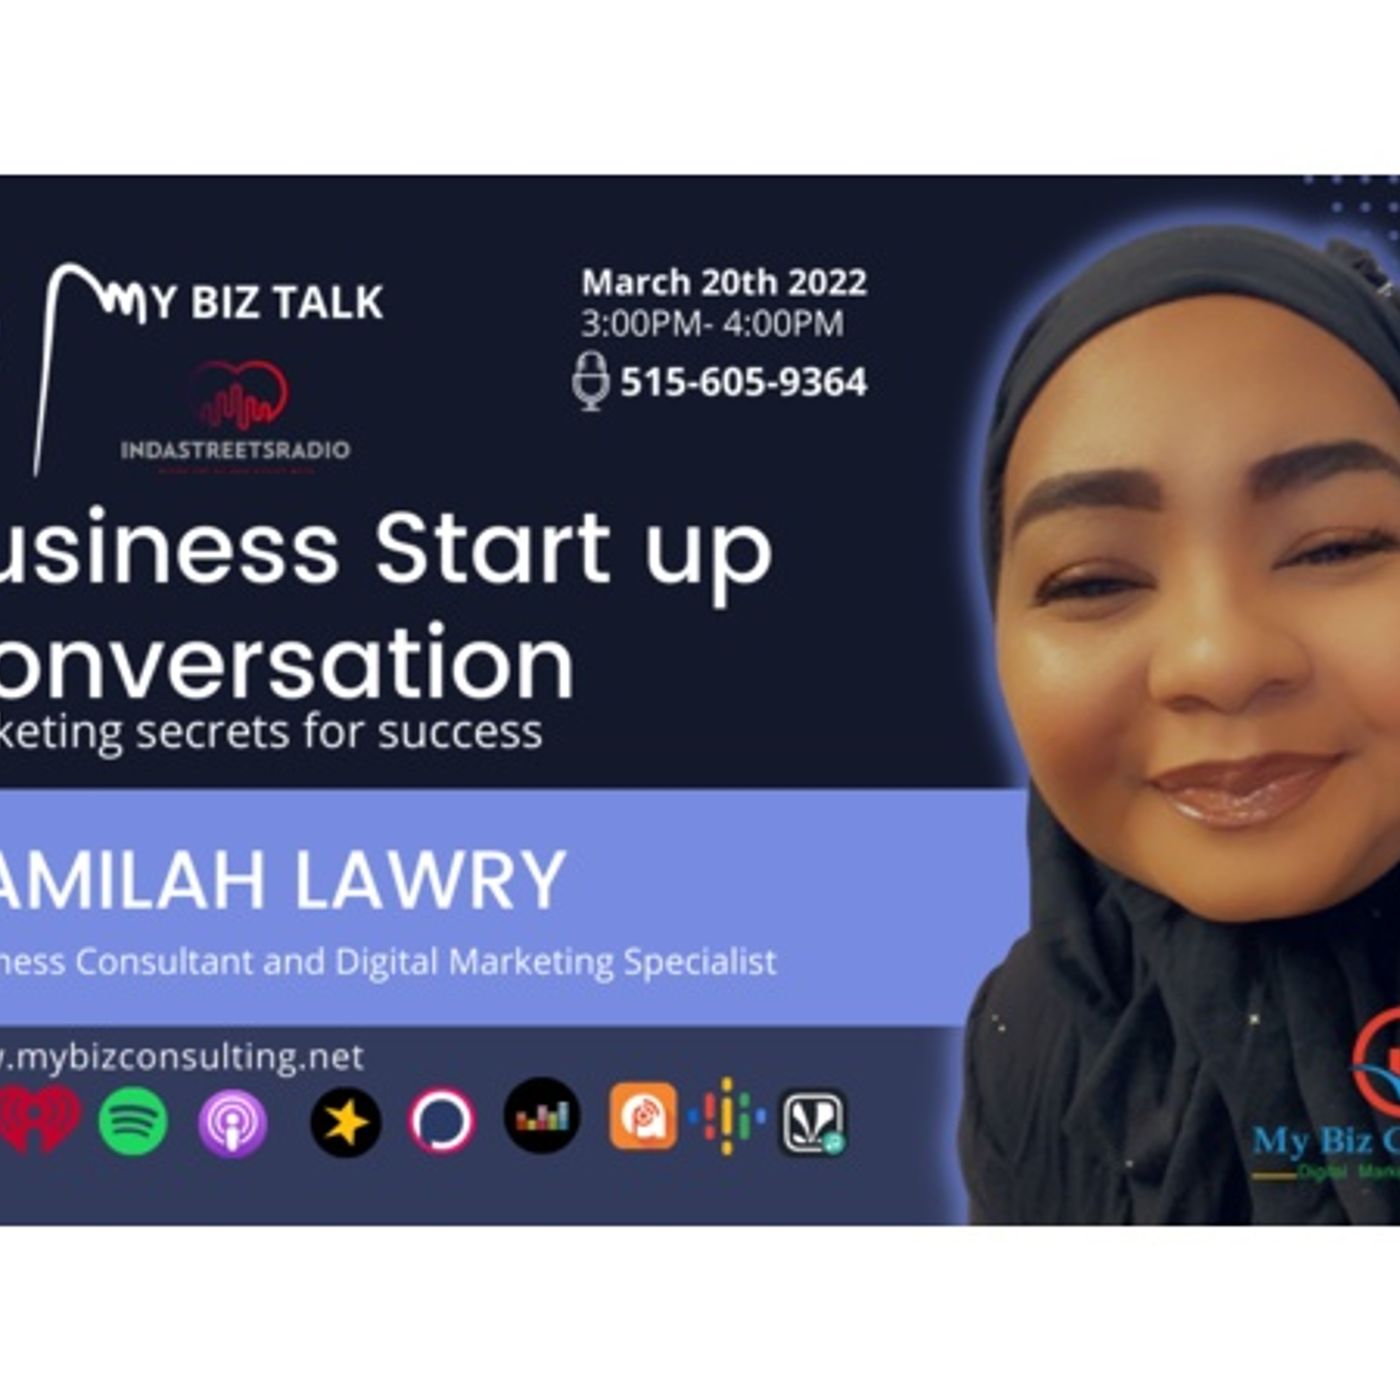 Business Start up Conversation